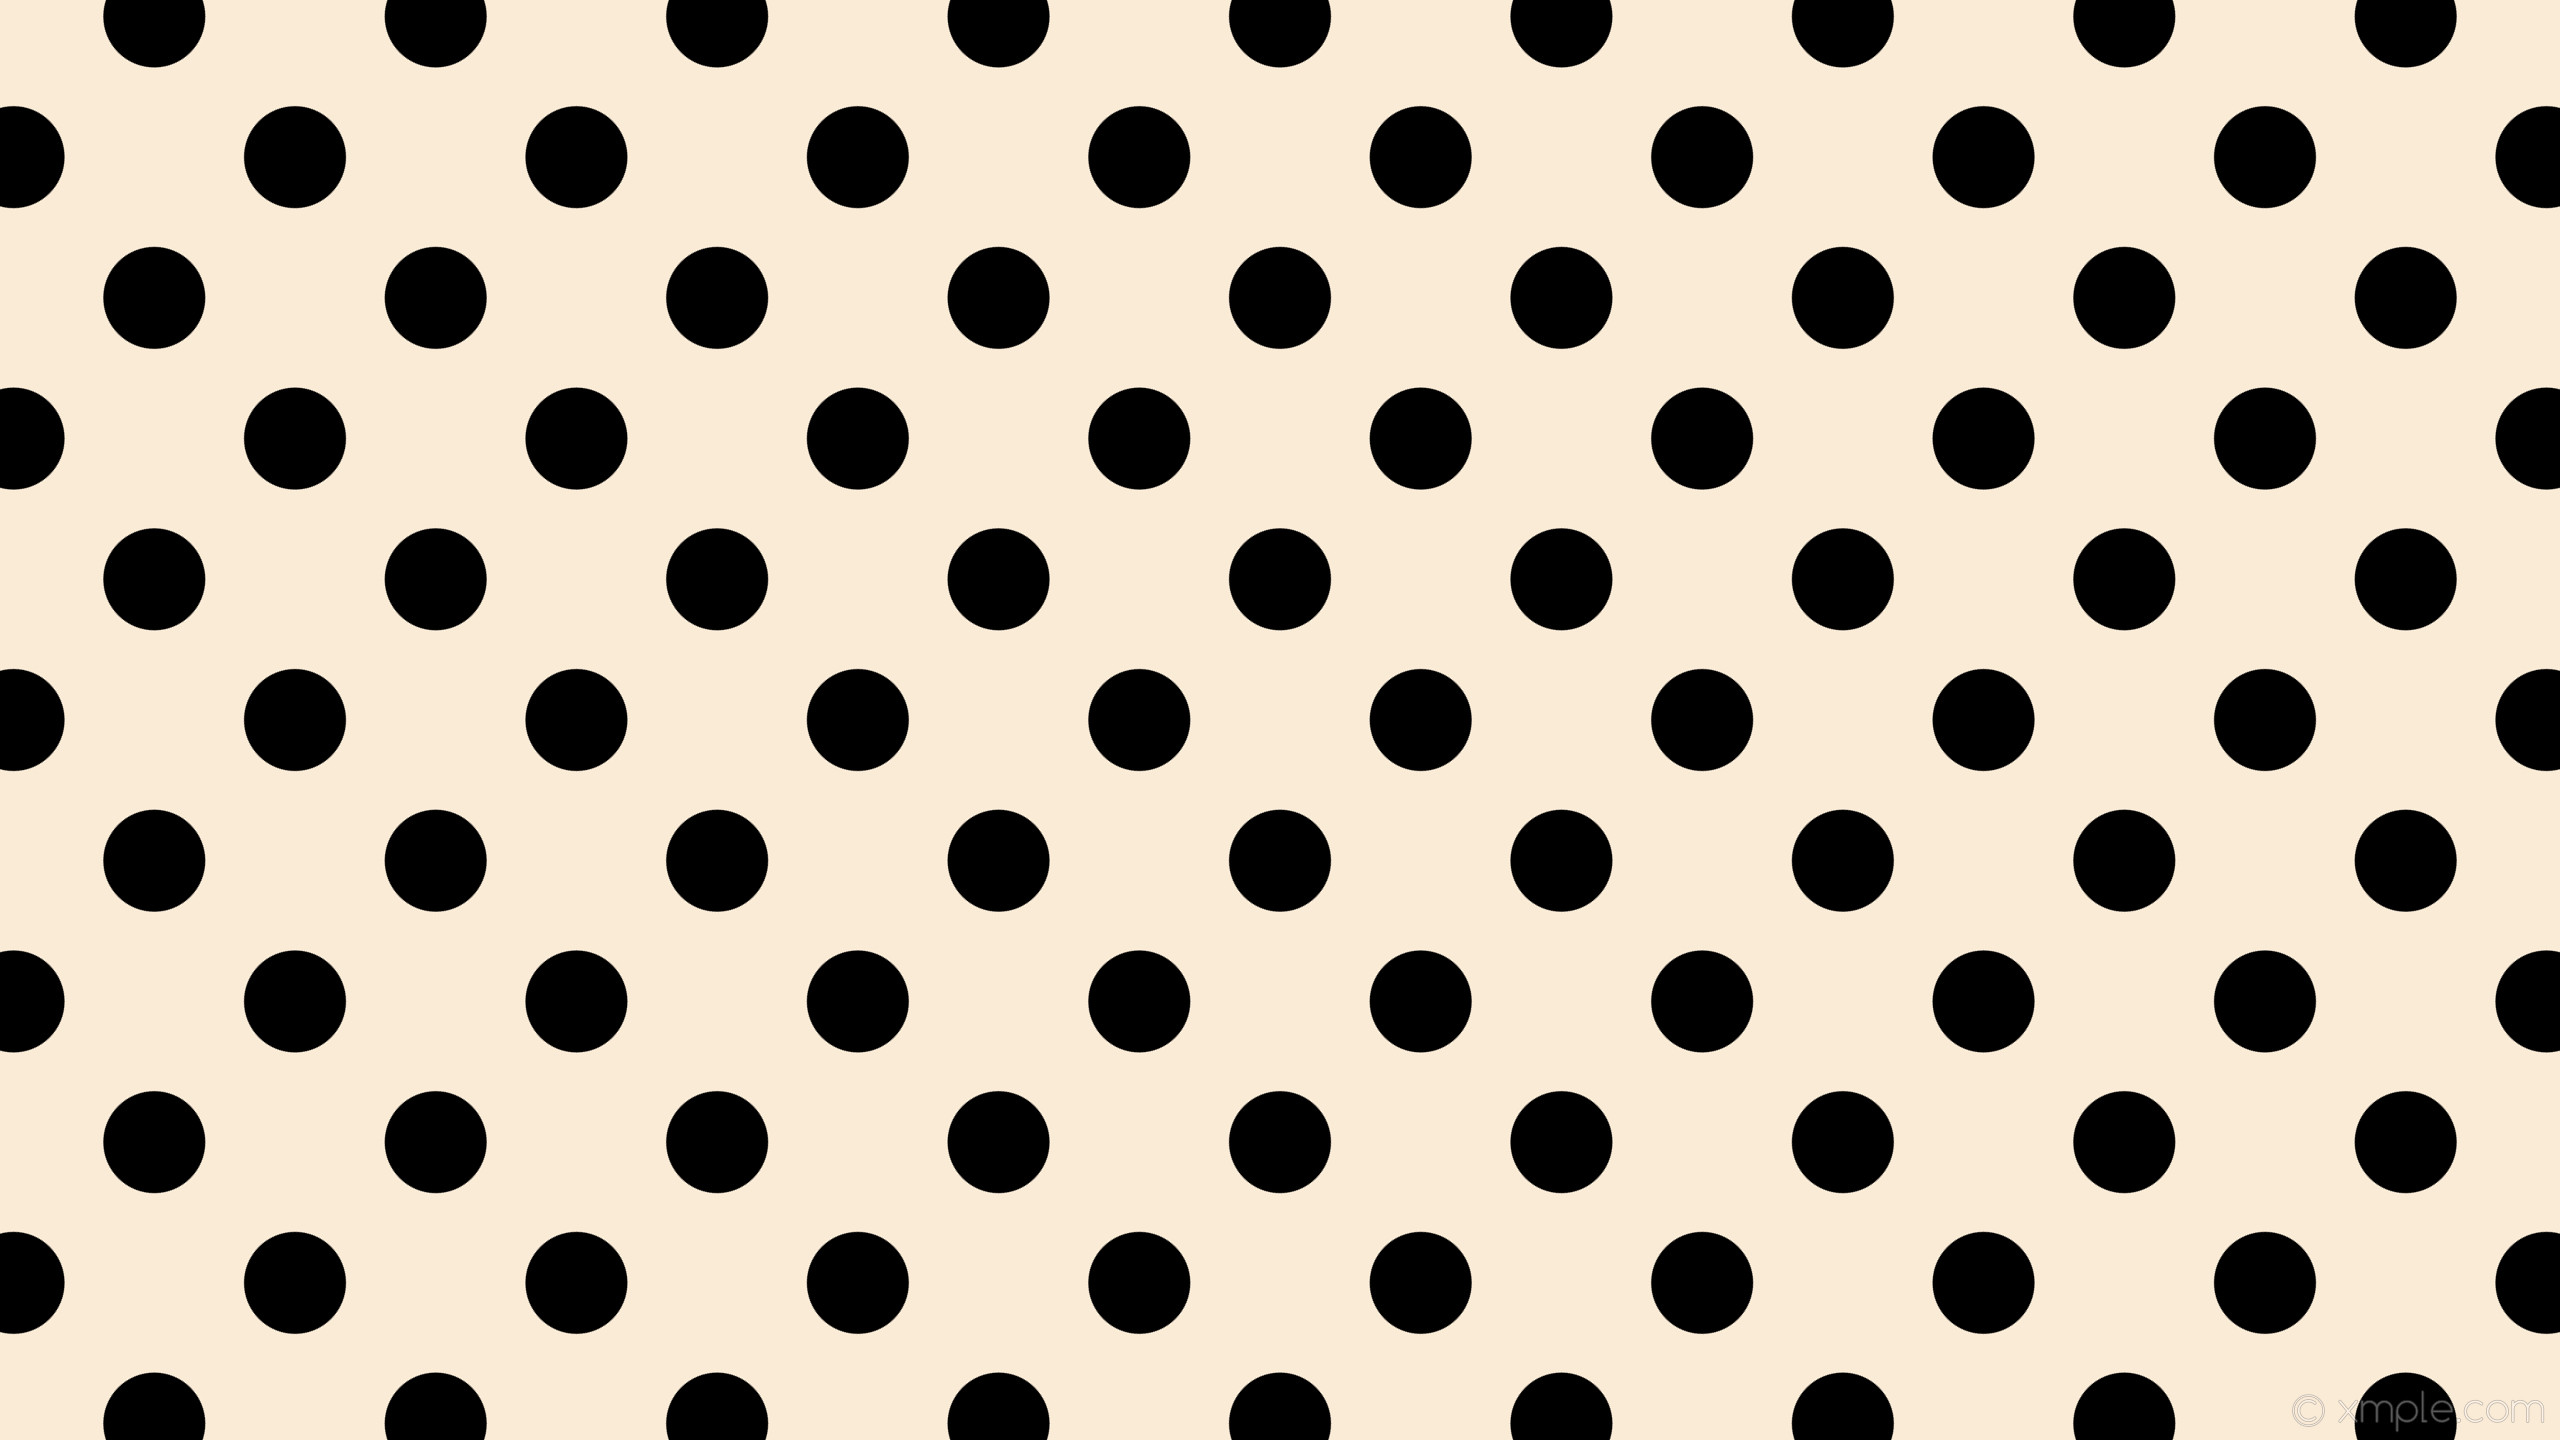 2560x1440 wallpaper polka dots white black spots antique white #faebd7 #000000 225Â°  102px 199px